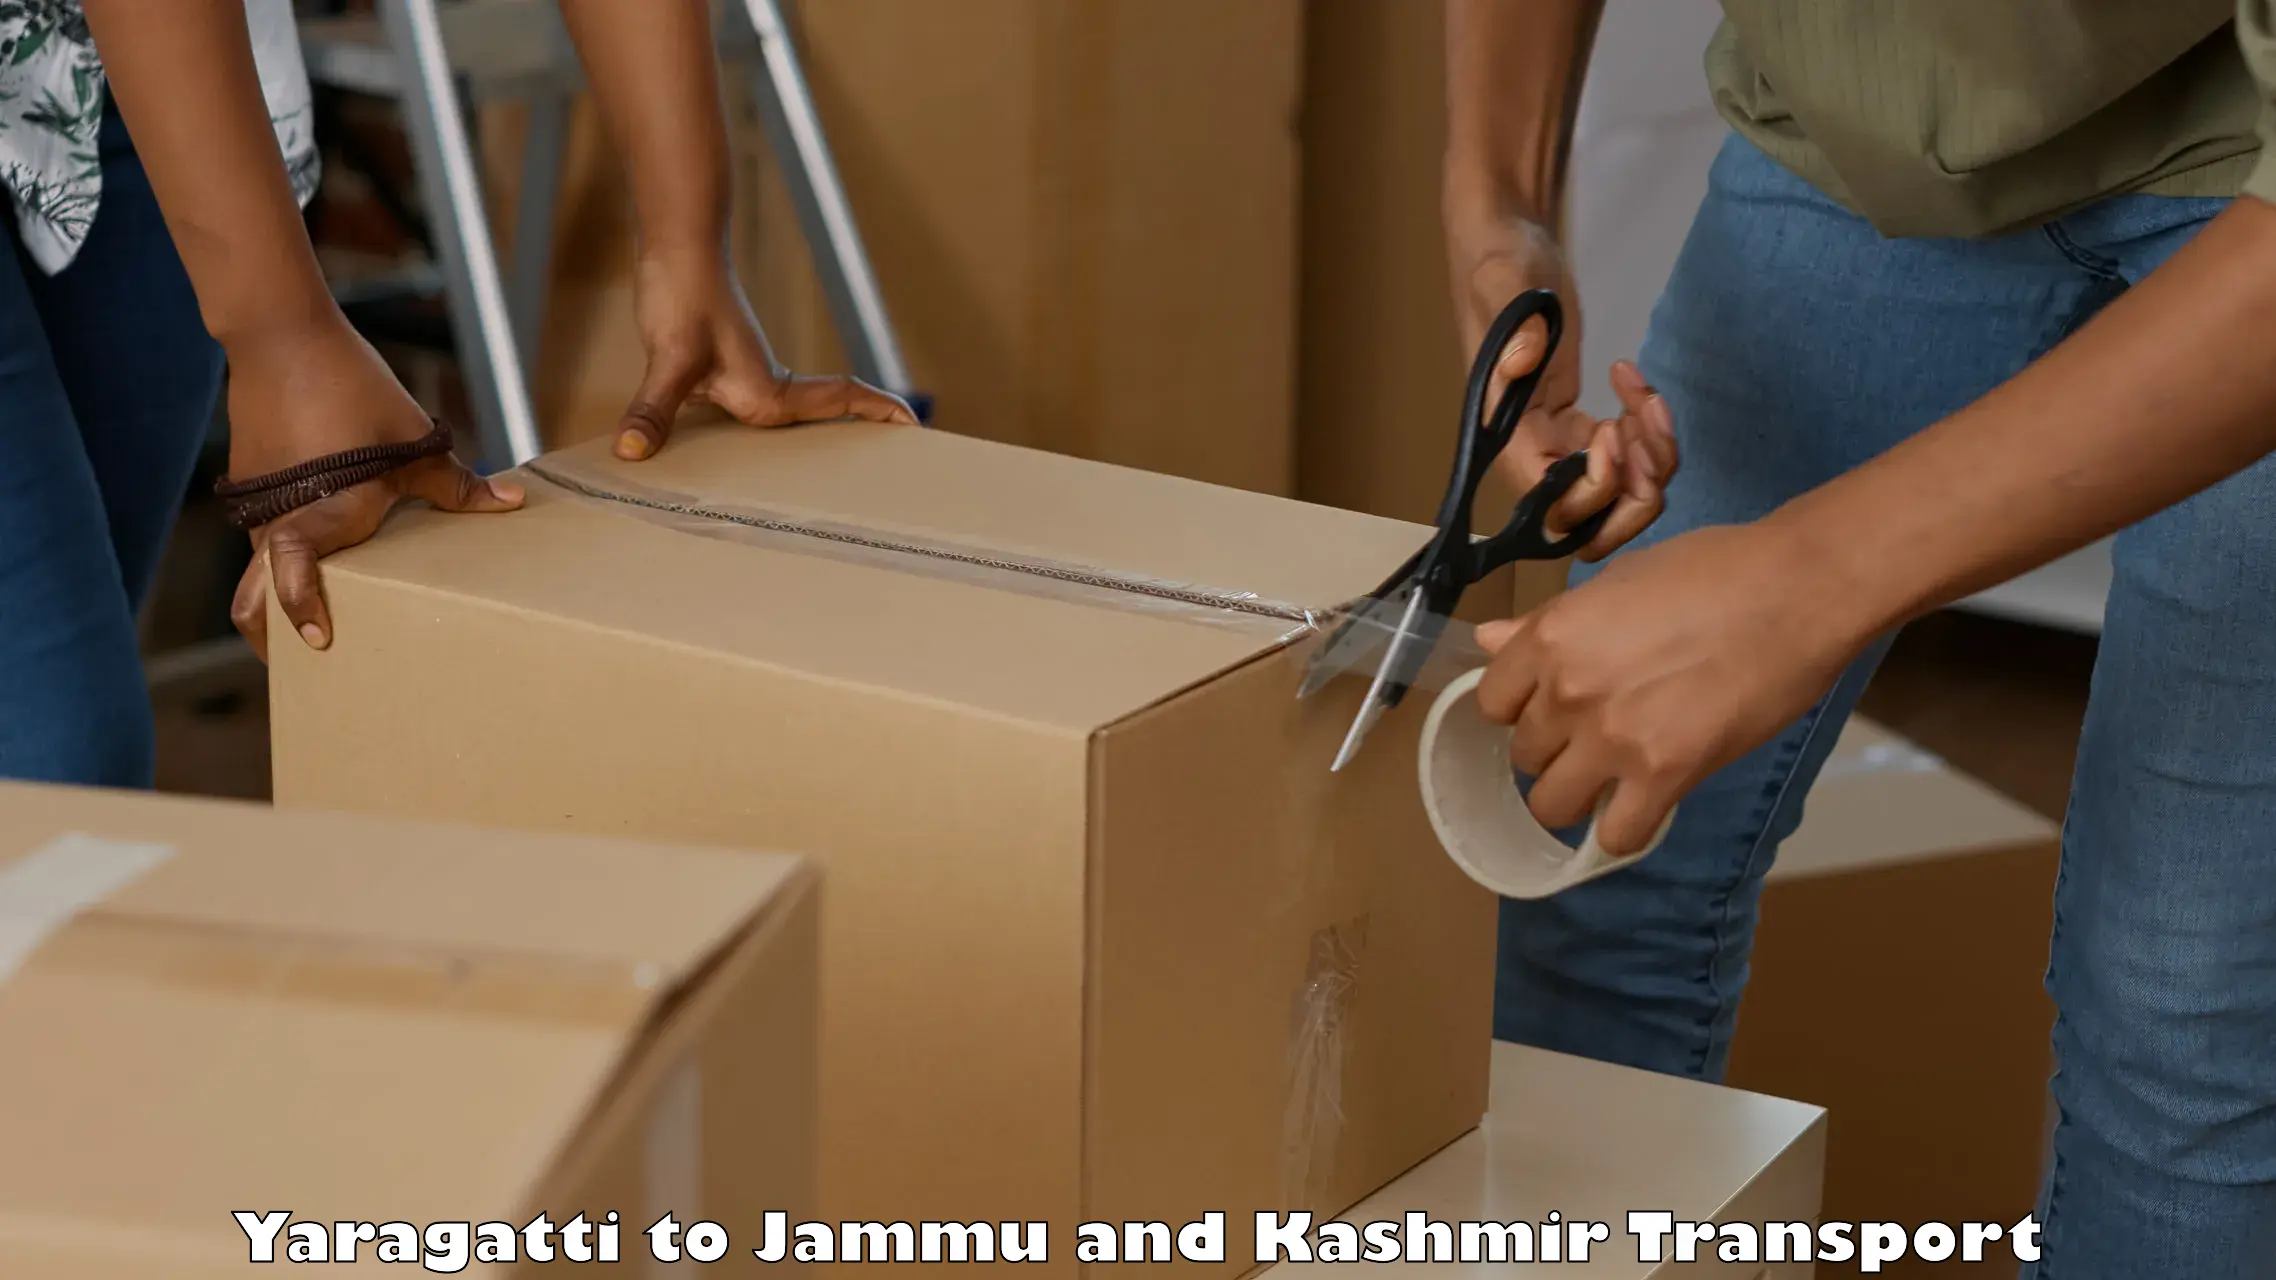 Transport shared services in Yaragatti to Srinagar Kashmir